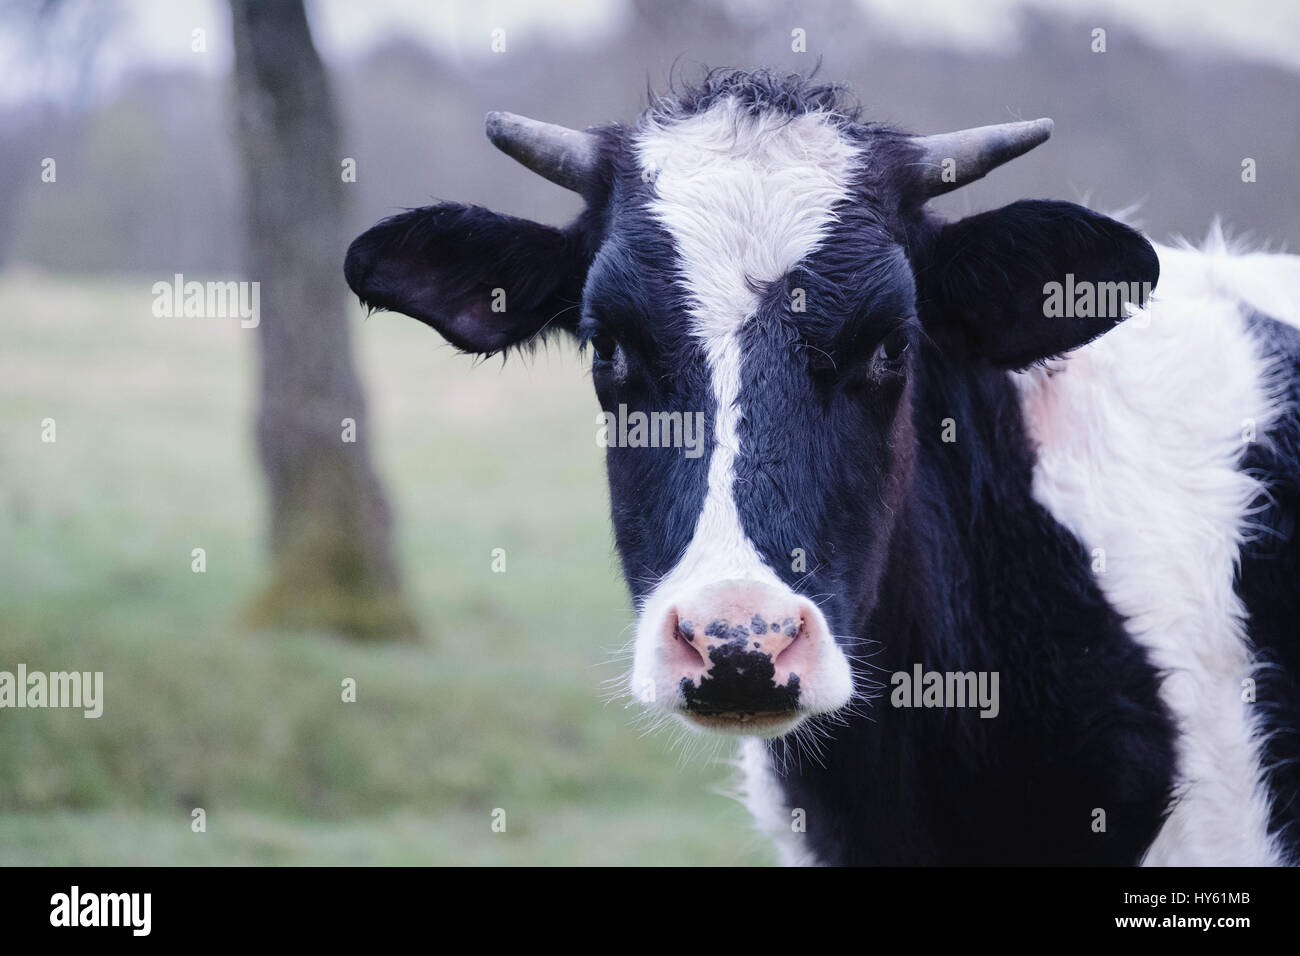 Photographie en couleur de l'extérieur, une jeune vache dans un champ. Banque D'Images